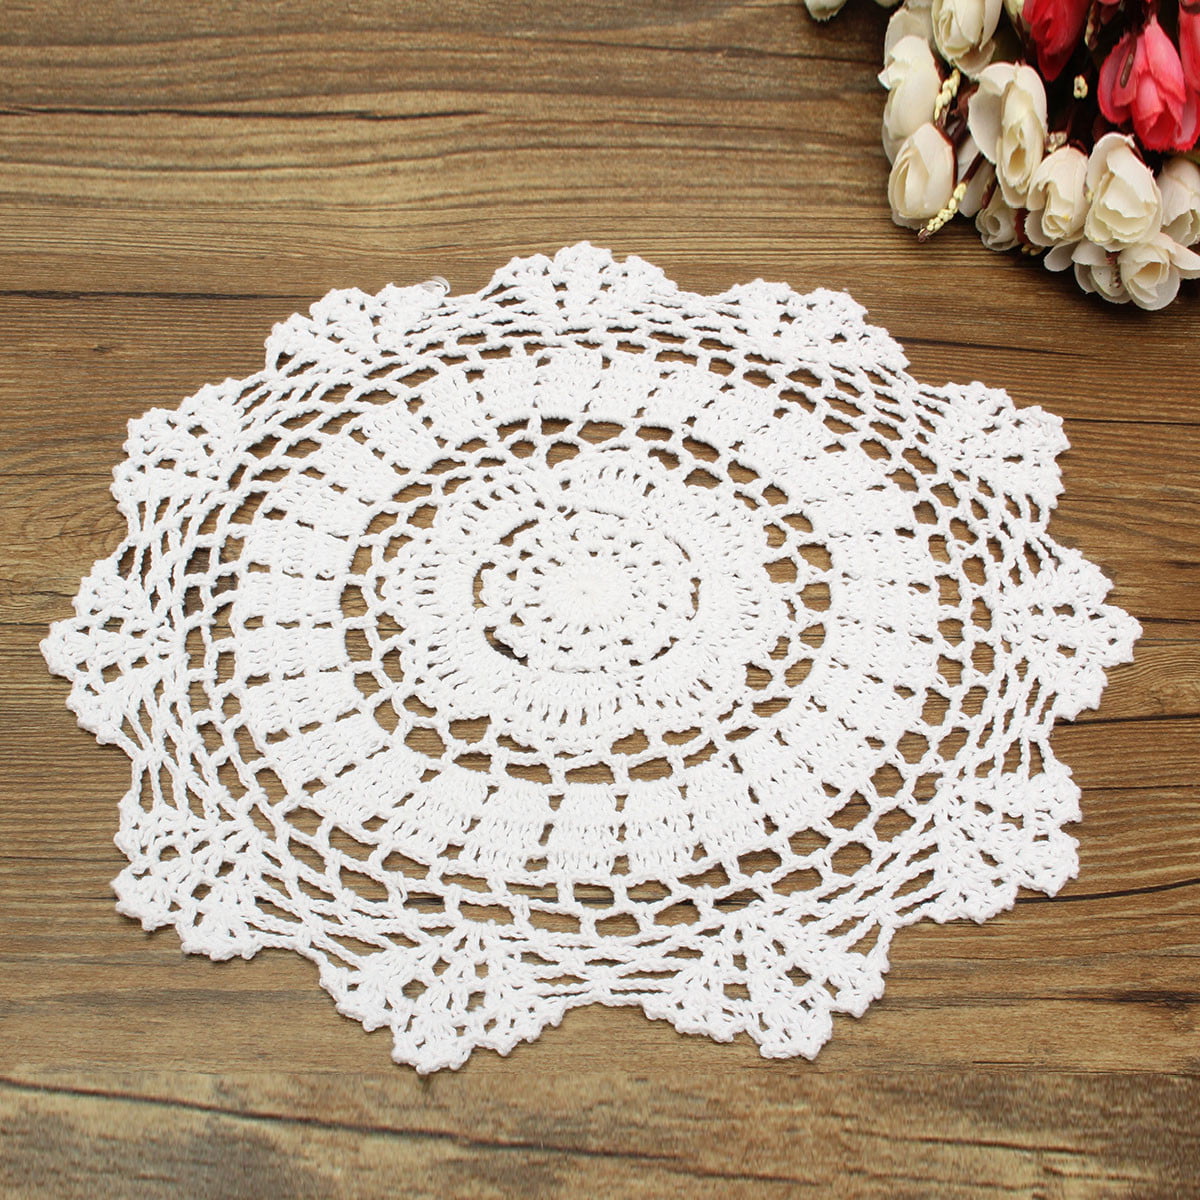 4Pcs/Lot White Vintage Cotton Crochet Lace Doilies Round Table Cloth Mats 13-15" 